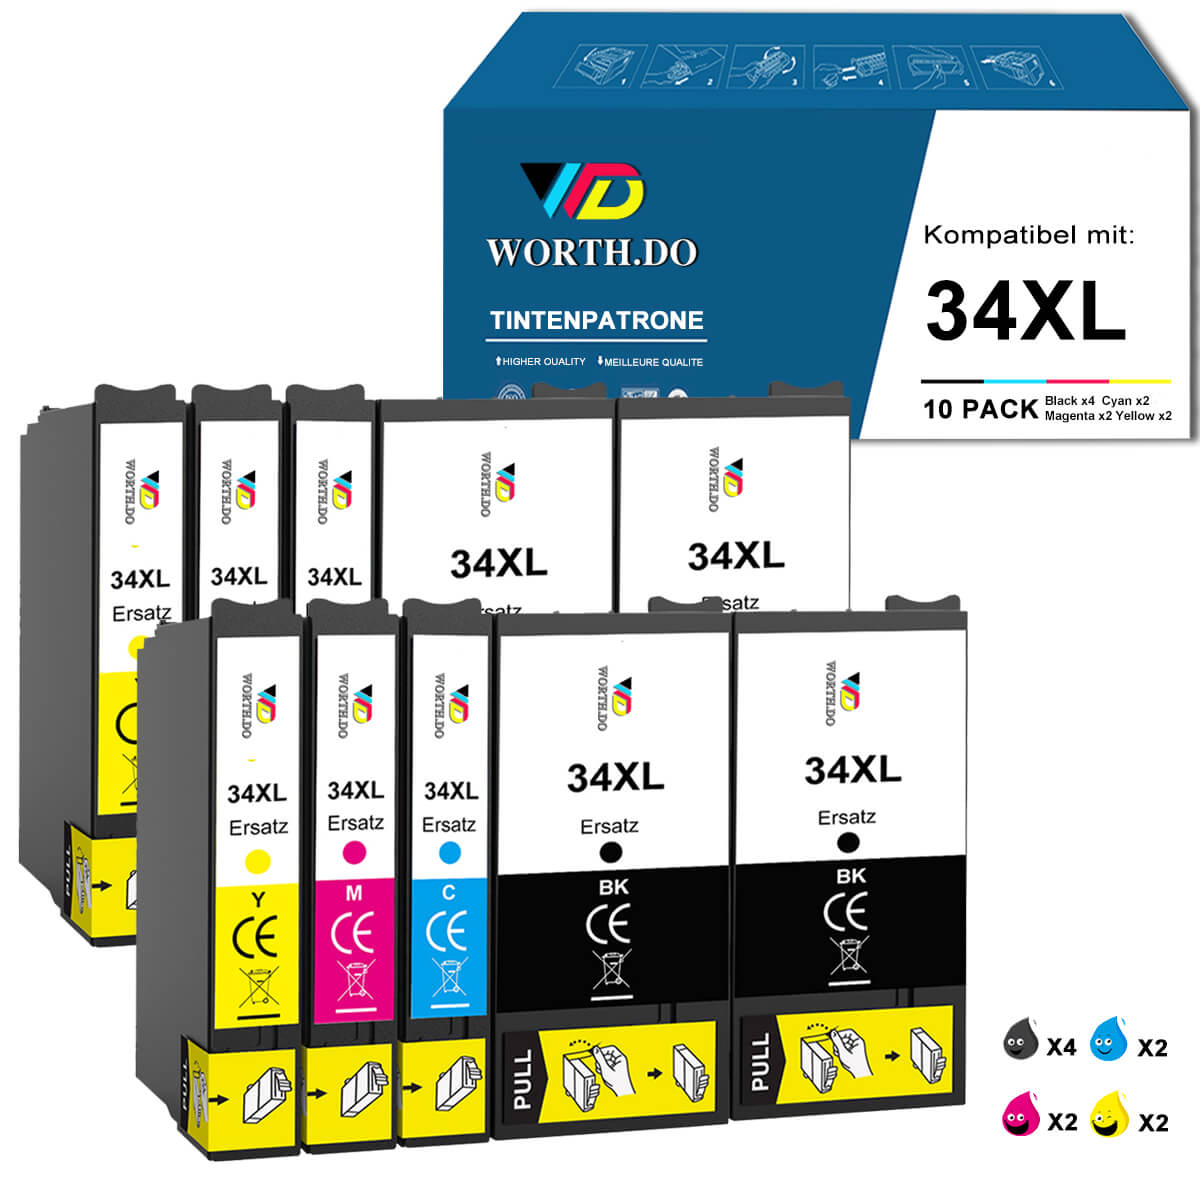    worthdo-kompatible-epson-wf-3720-druckerpatronen-34xl-value-pack